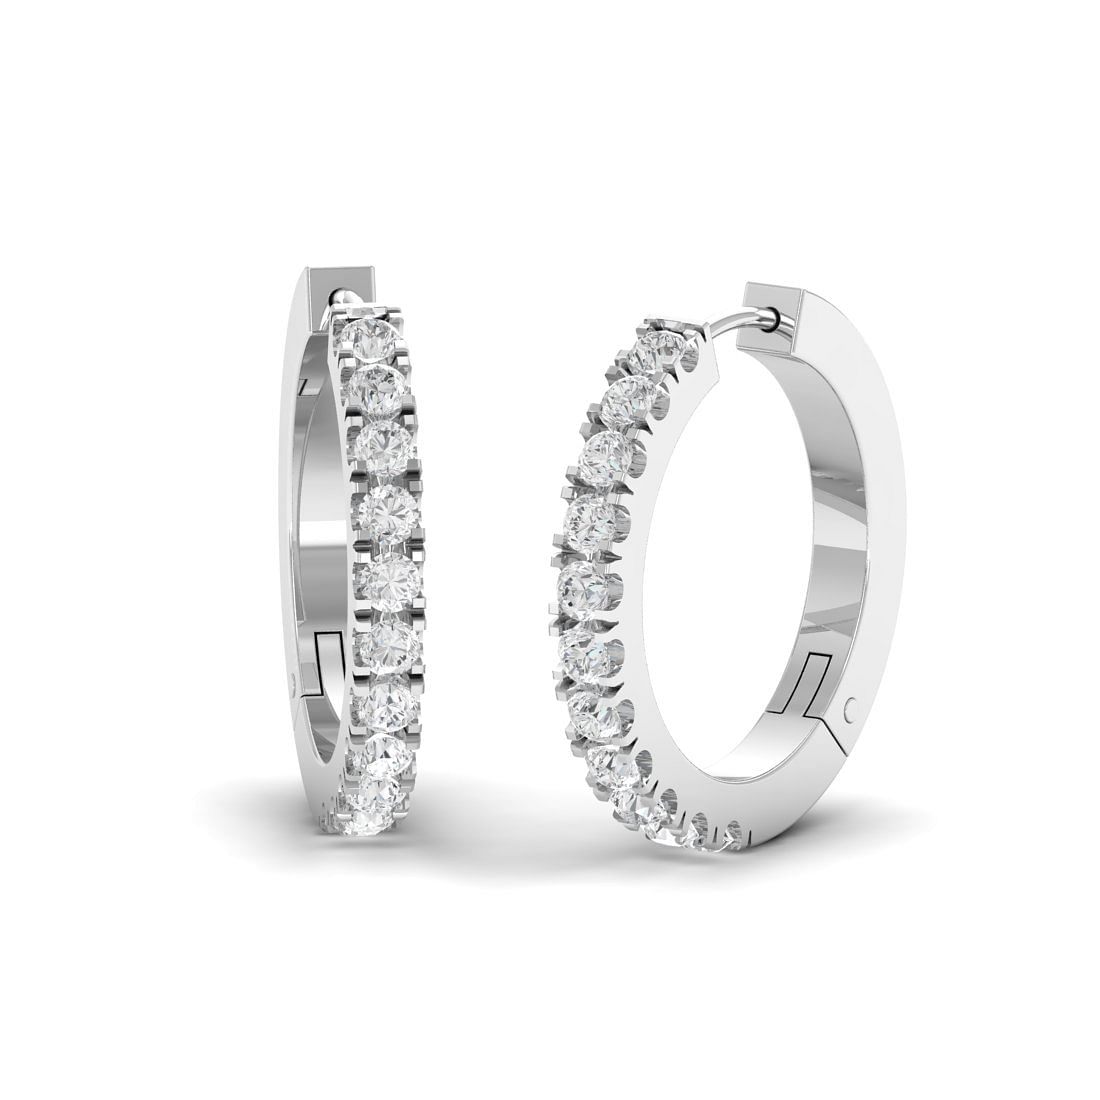 18k White Gold Circle Diamond Stud Earrings for wedding